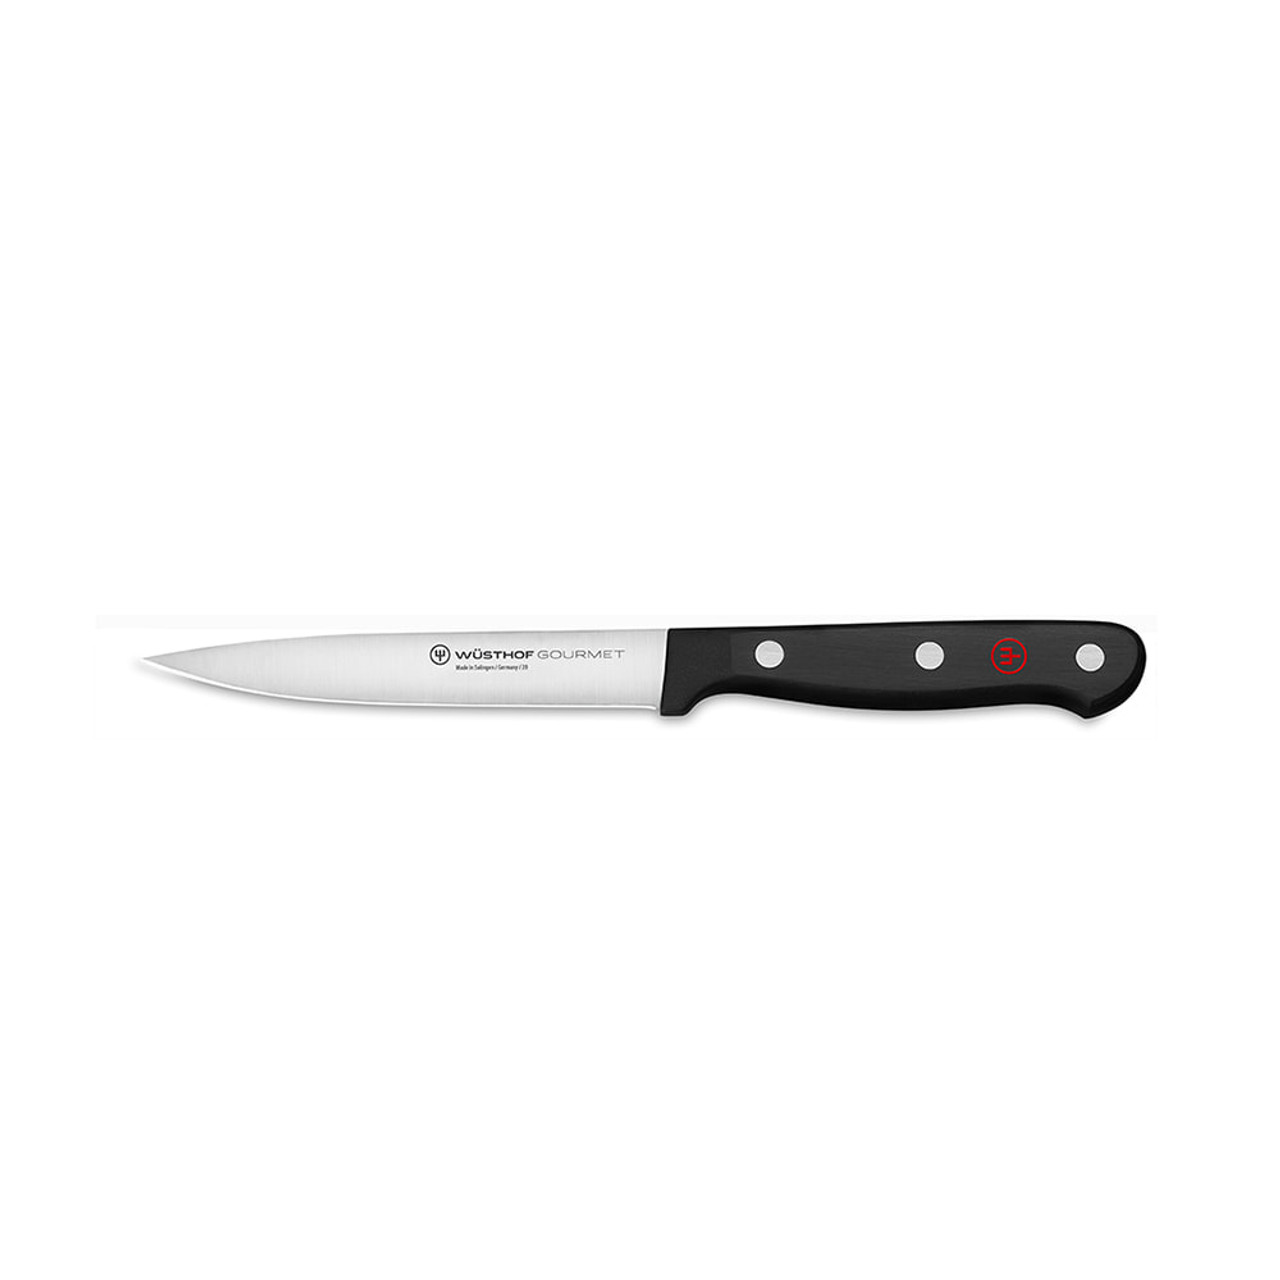 Global SAI 4.5 Jumbo Steak Knife